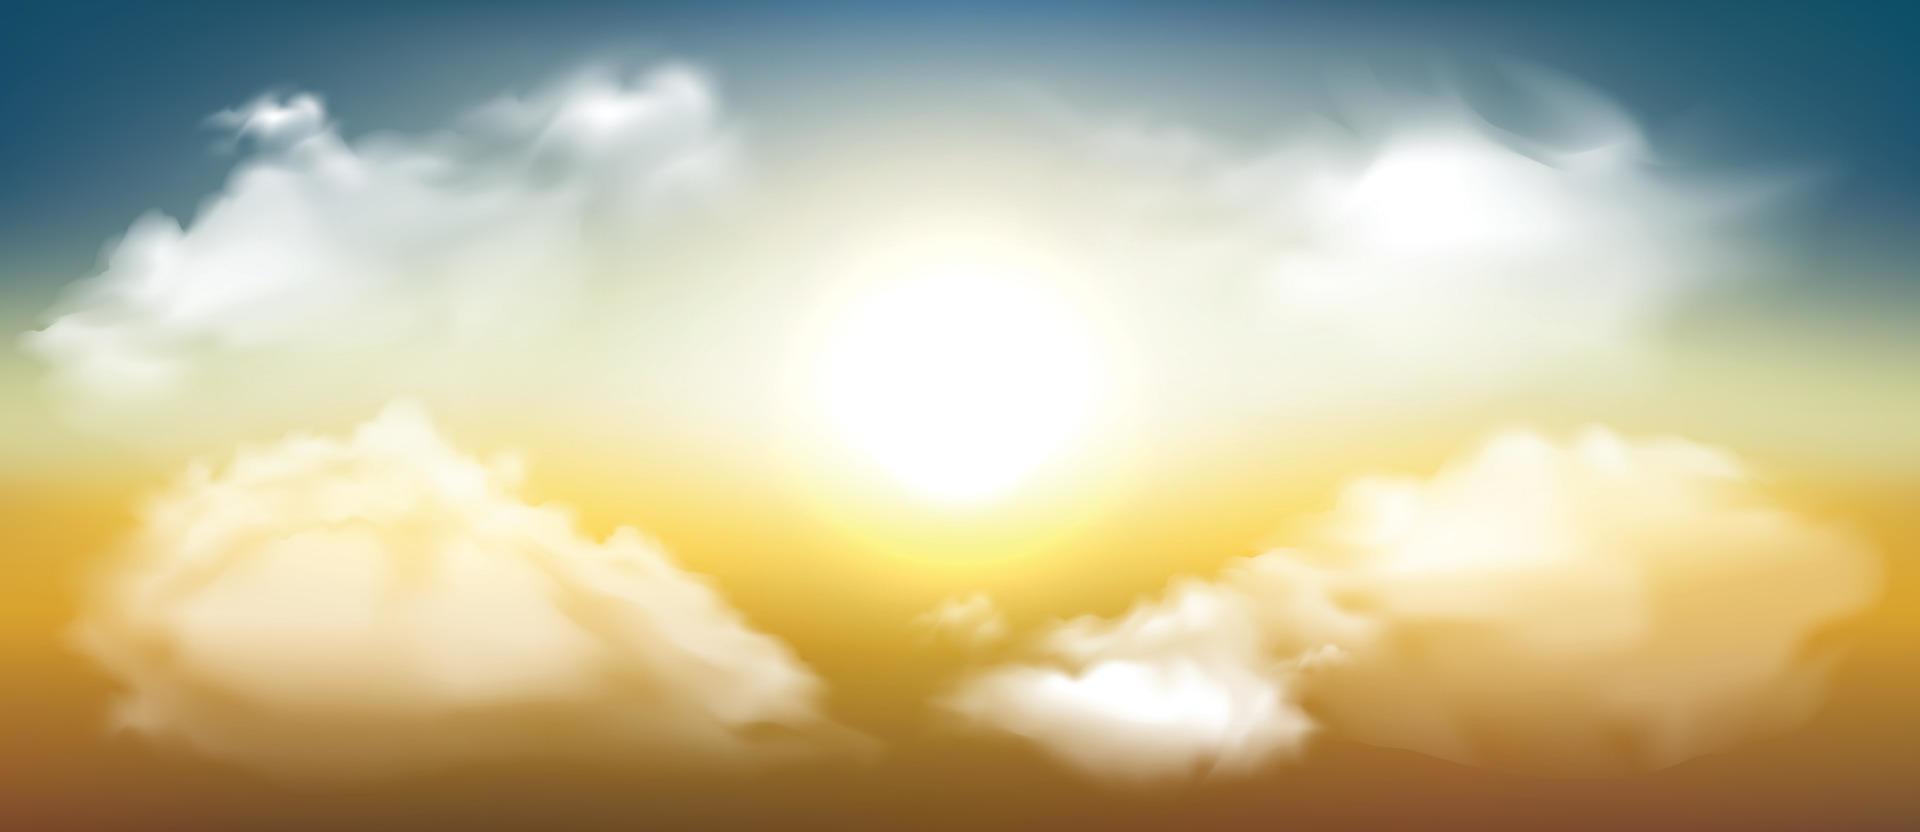 zonnige achtergrond, blauwe lucht met witte wolken en zon vector